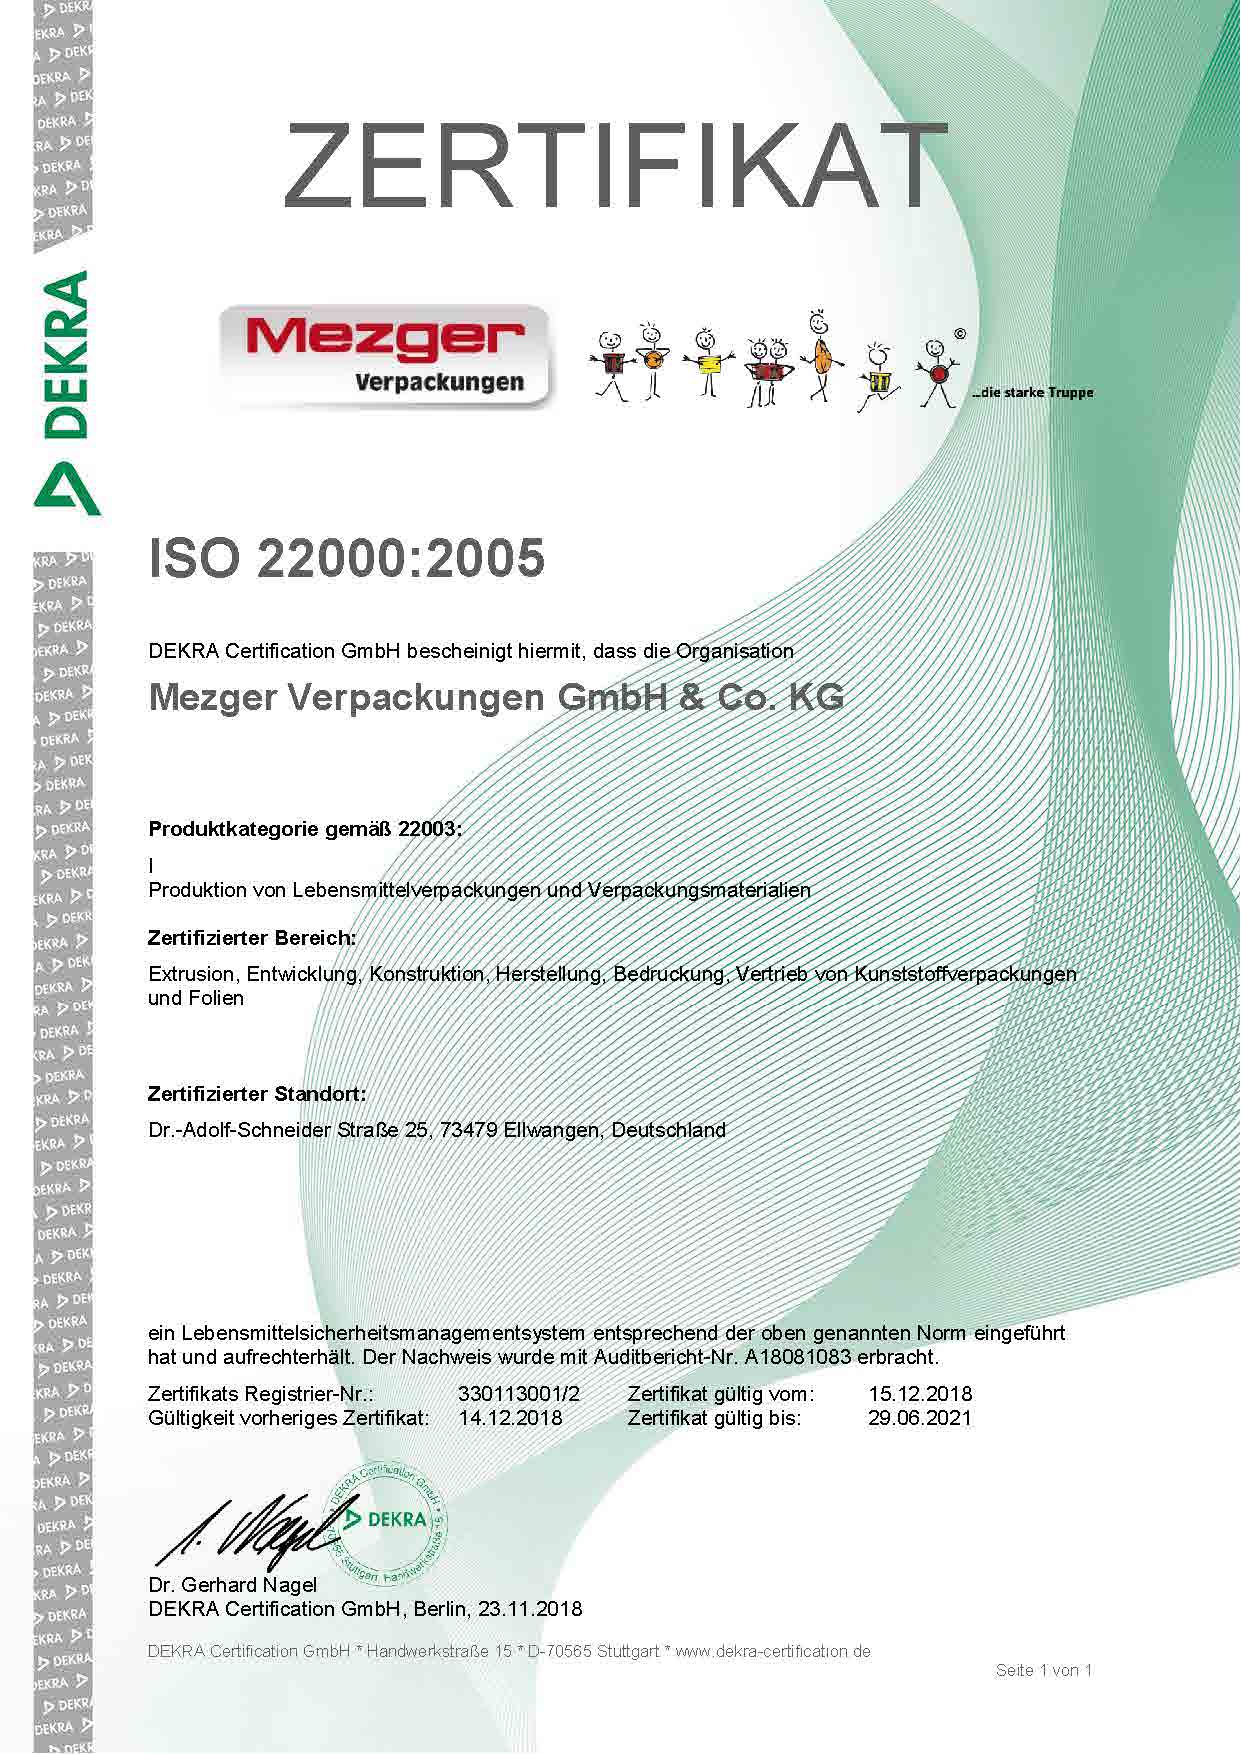 Zertifikat ISO 22000 Re 330113001 2 d